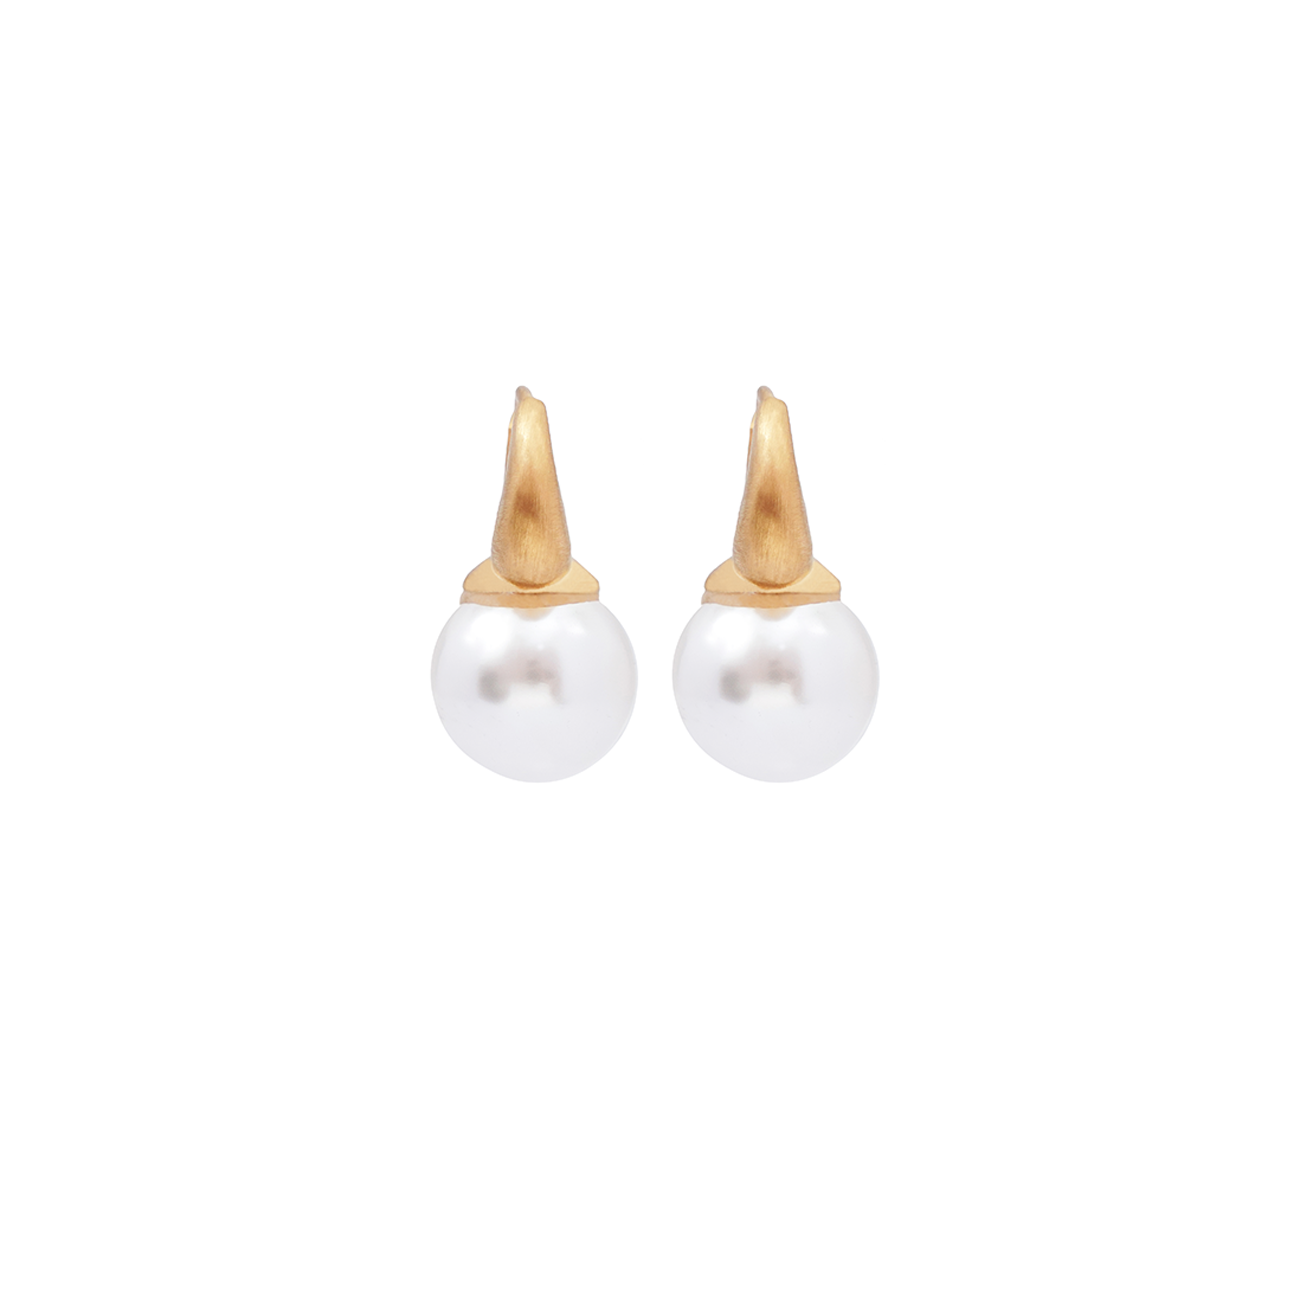 Kate pearl earrings